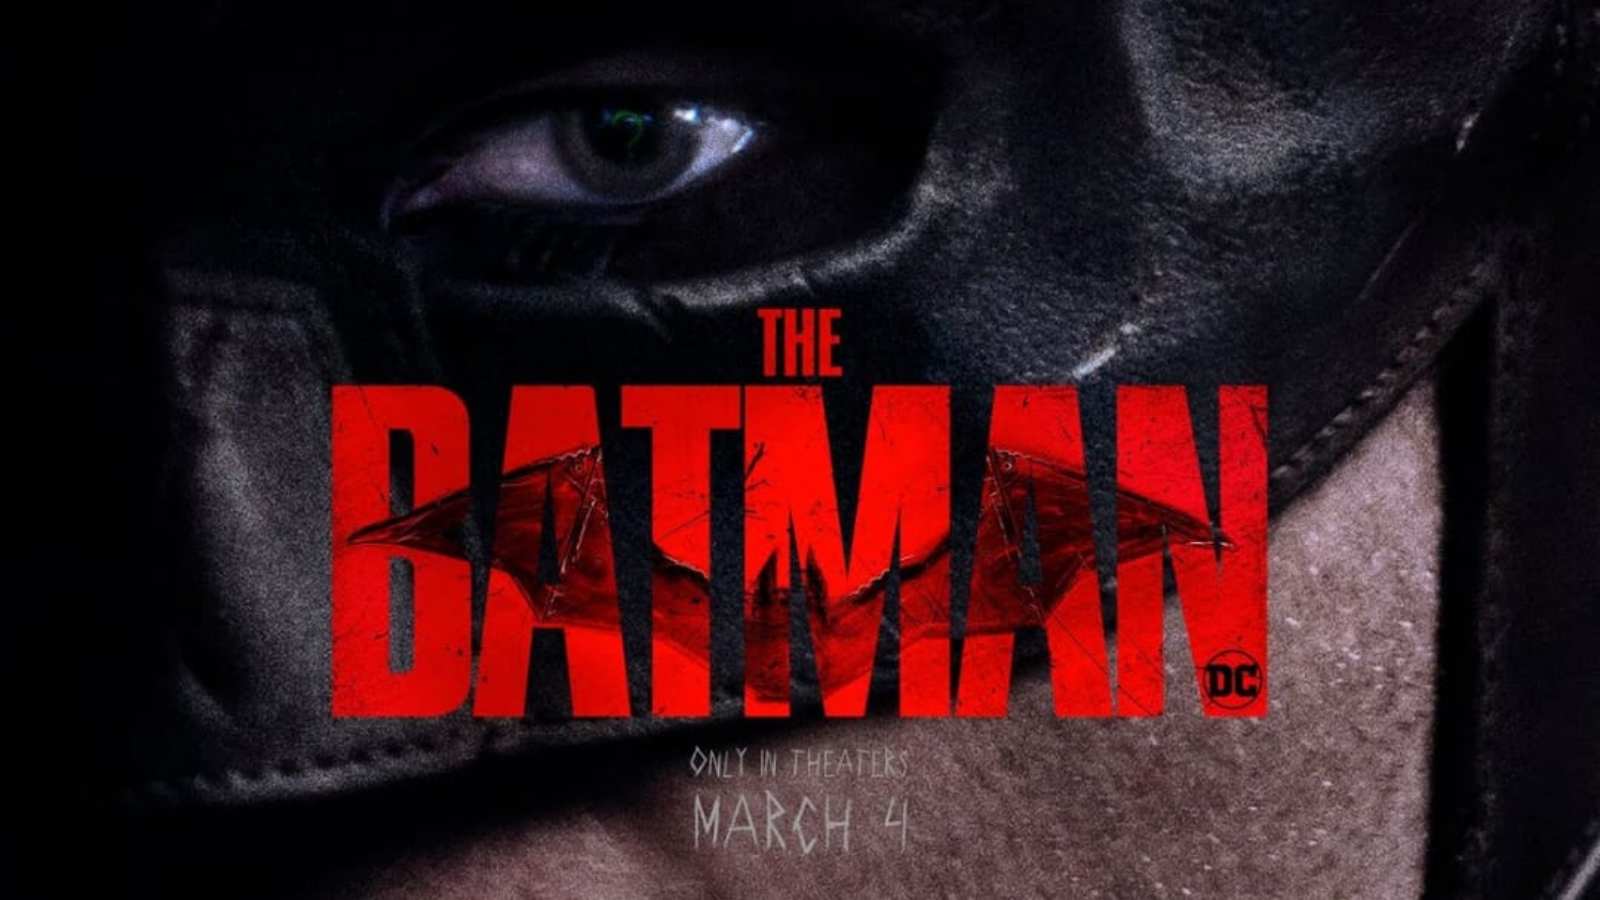 The Batman official poster featuring Robert Pattinson 